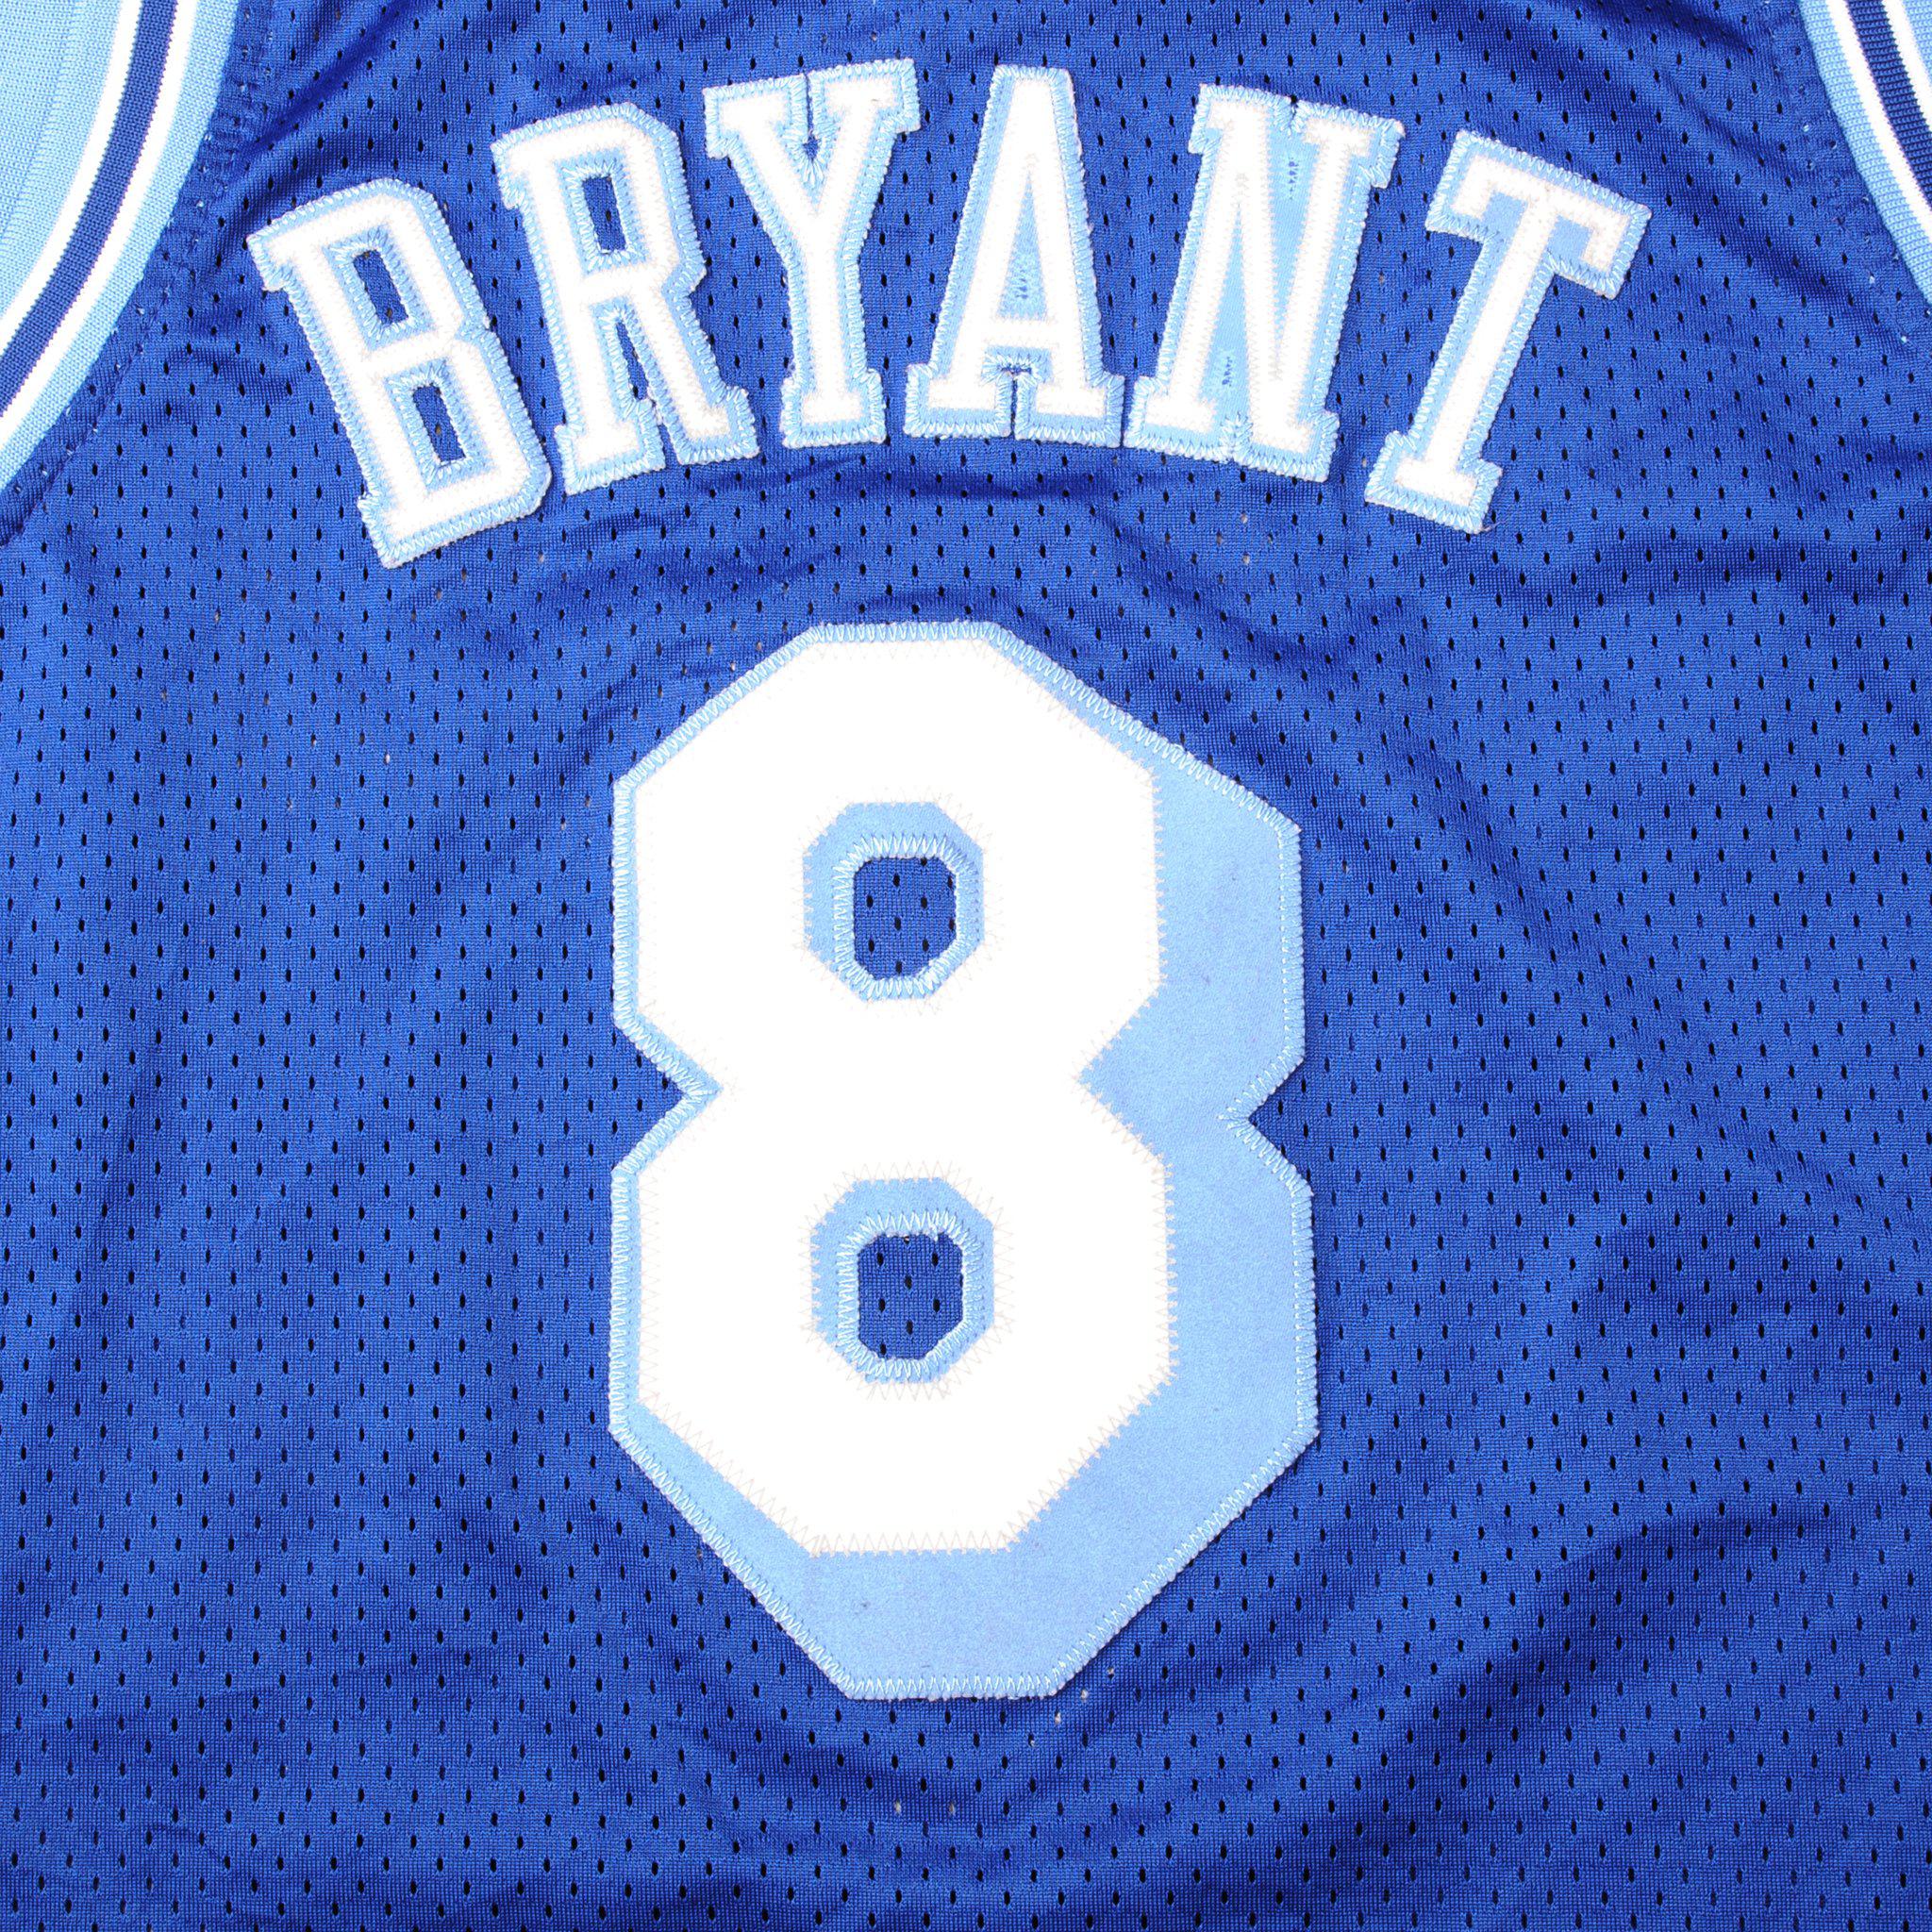 Original Nike Vintage Los Angeles Lakers Kobe Bryant Blue Jersey